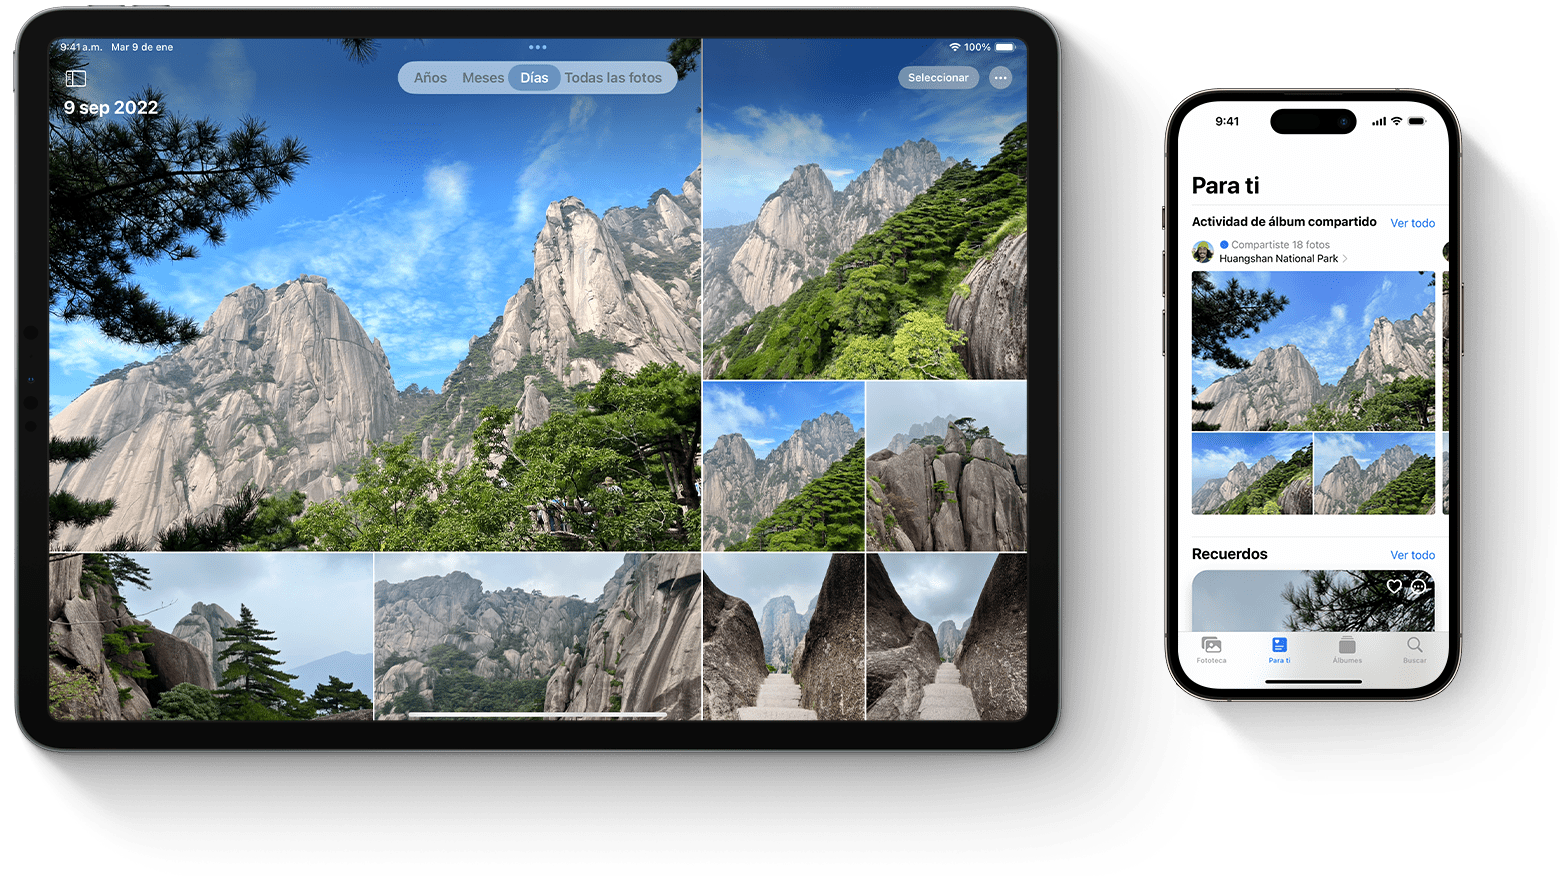 Imprimir tus propias fotos en la app Fotos en la Mac - Soporte técnico de  Apple (MX)